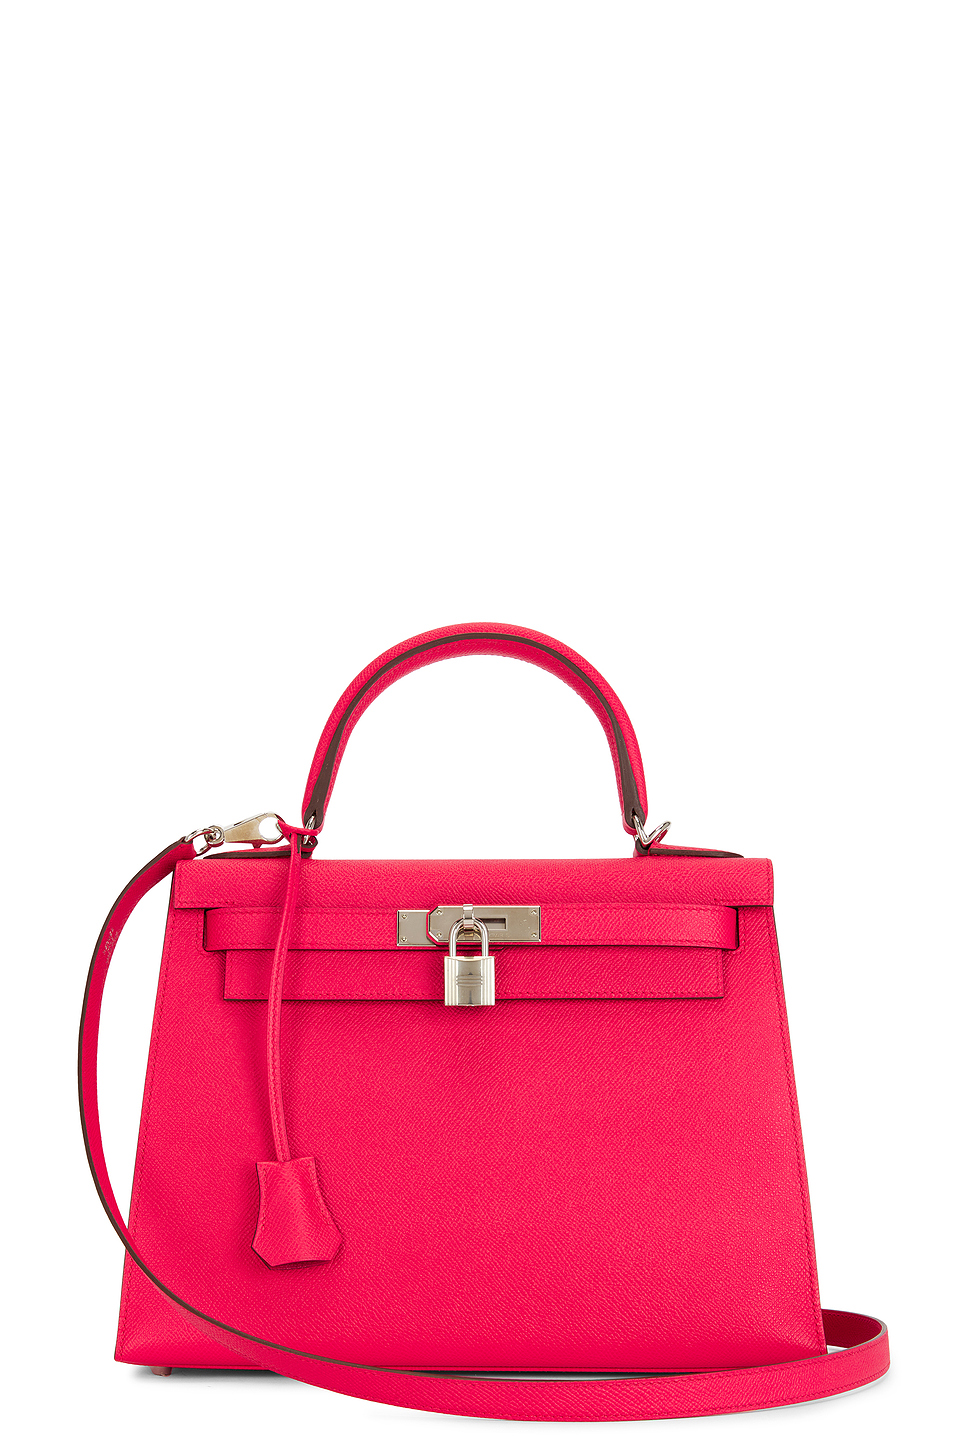 Epsom Kelly 25 Handbag in Pink